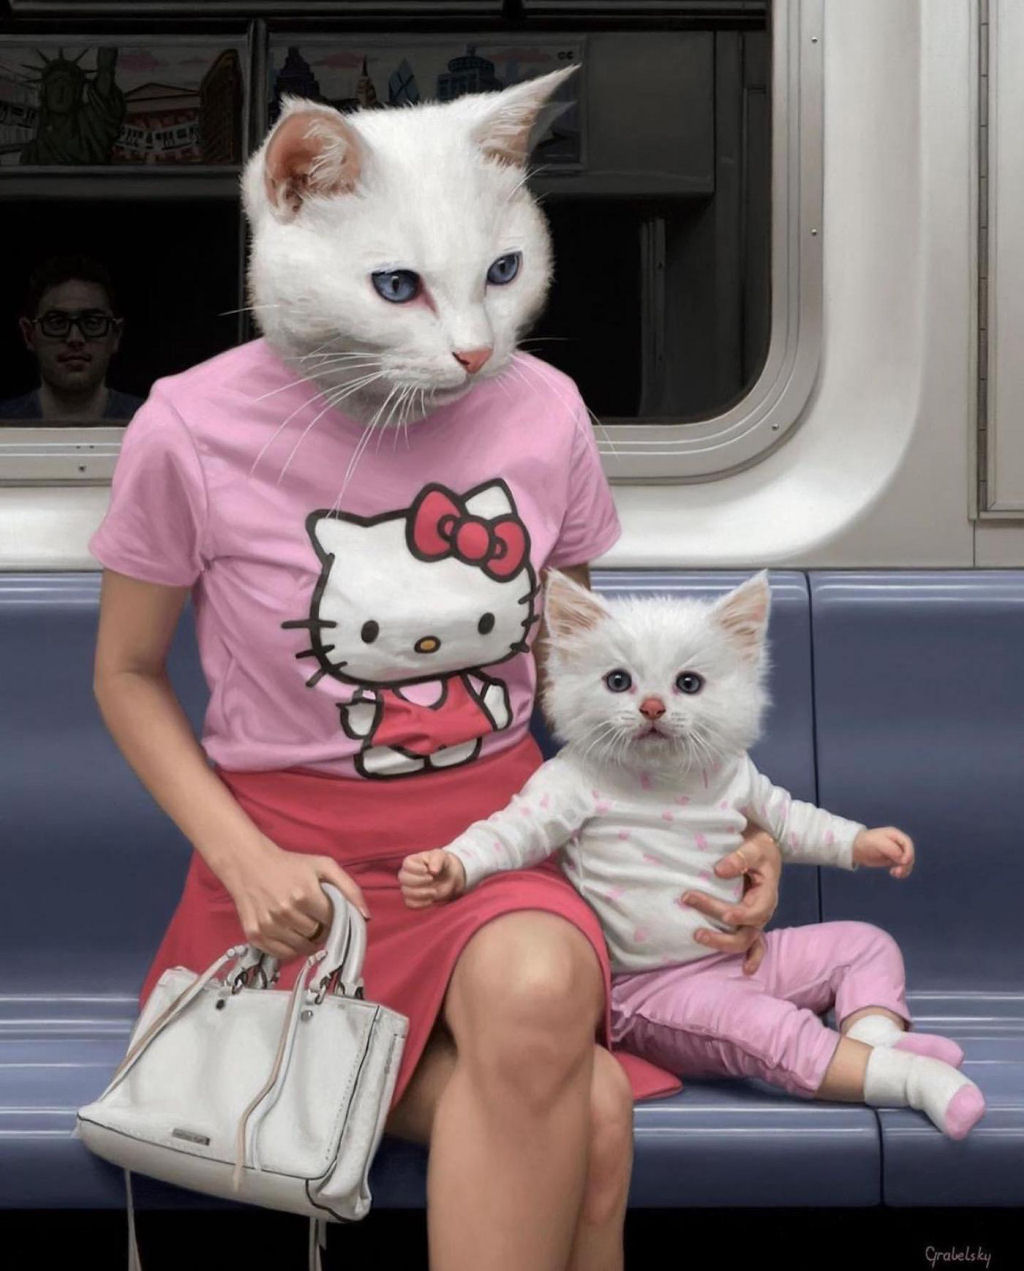 Estas pinturas surreais mostram 'viagens animais' pelo metr de Nova York 02